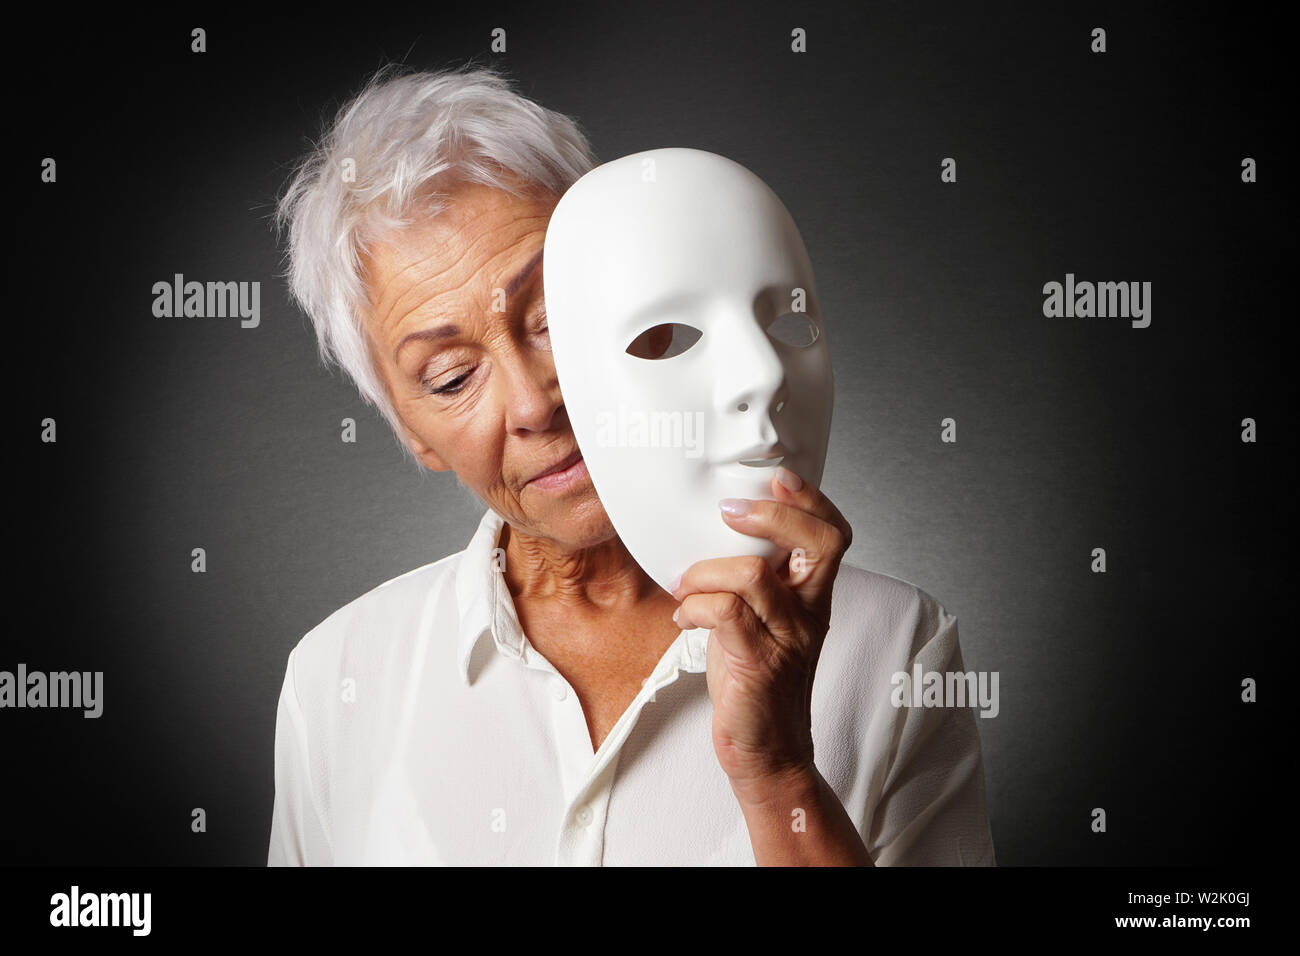 Vieille Femme aux cheveux blancs se cachant derrière un masque - visage triste dépression ou concept de personnalité Banque D'Images